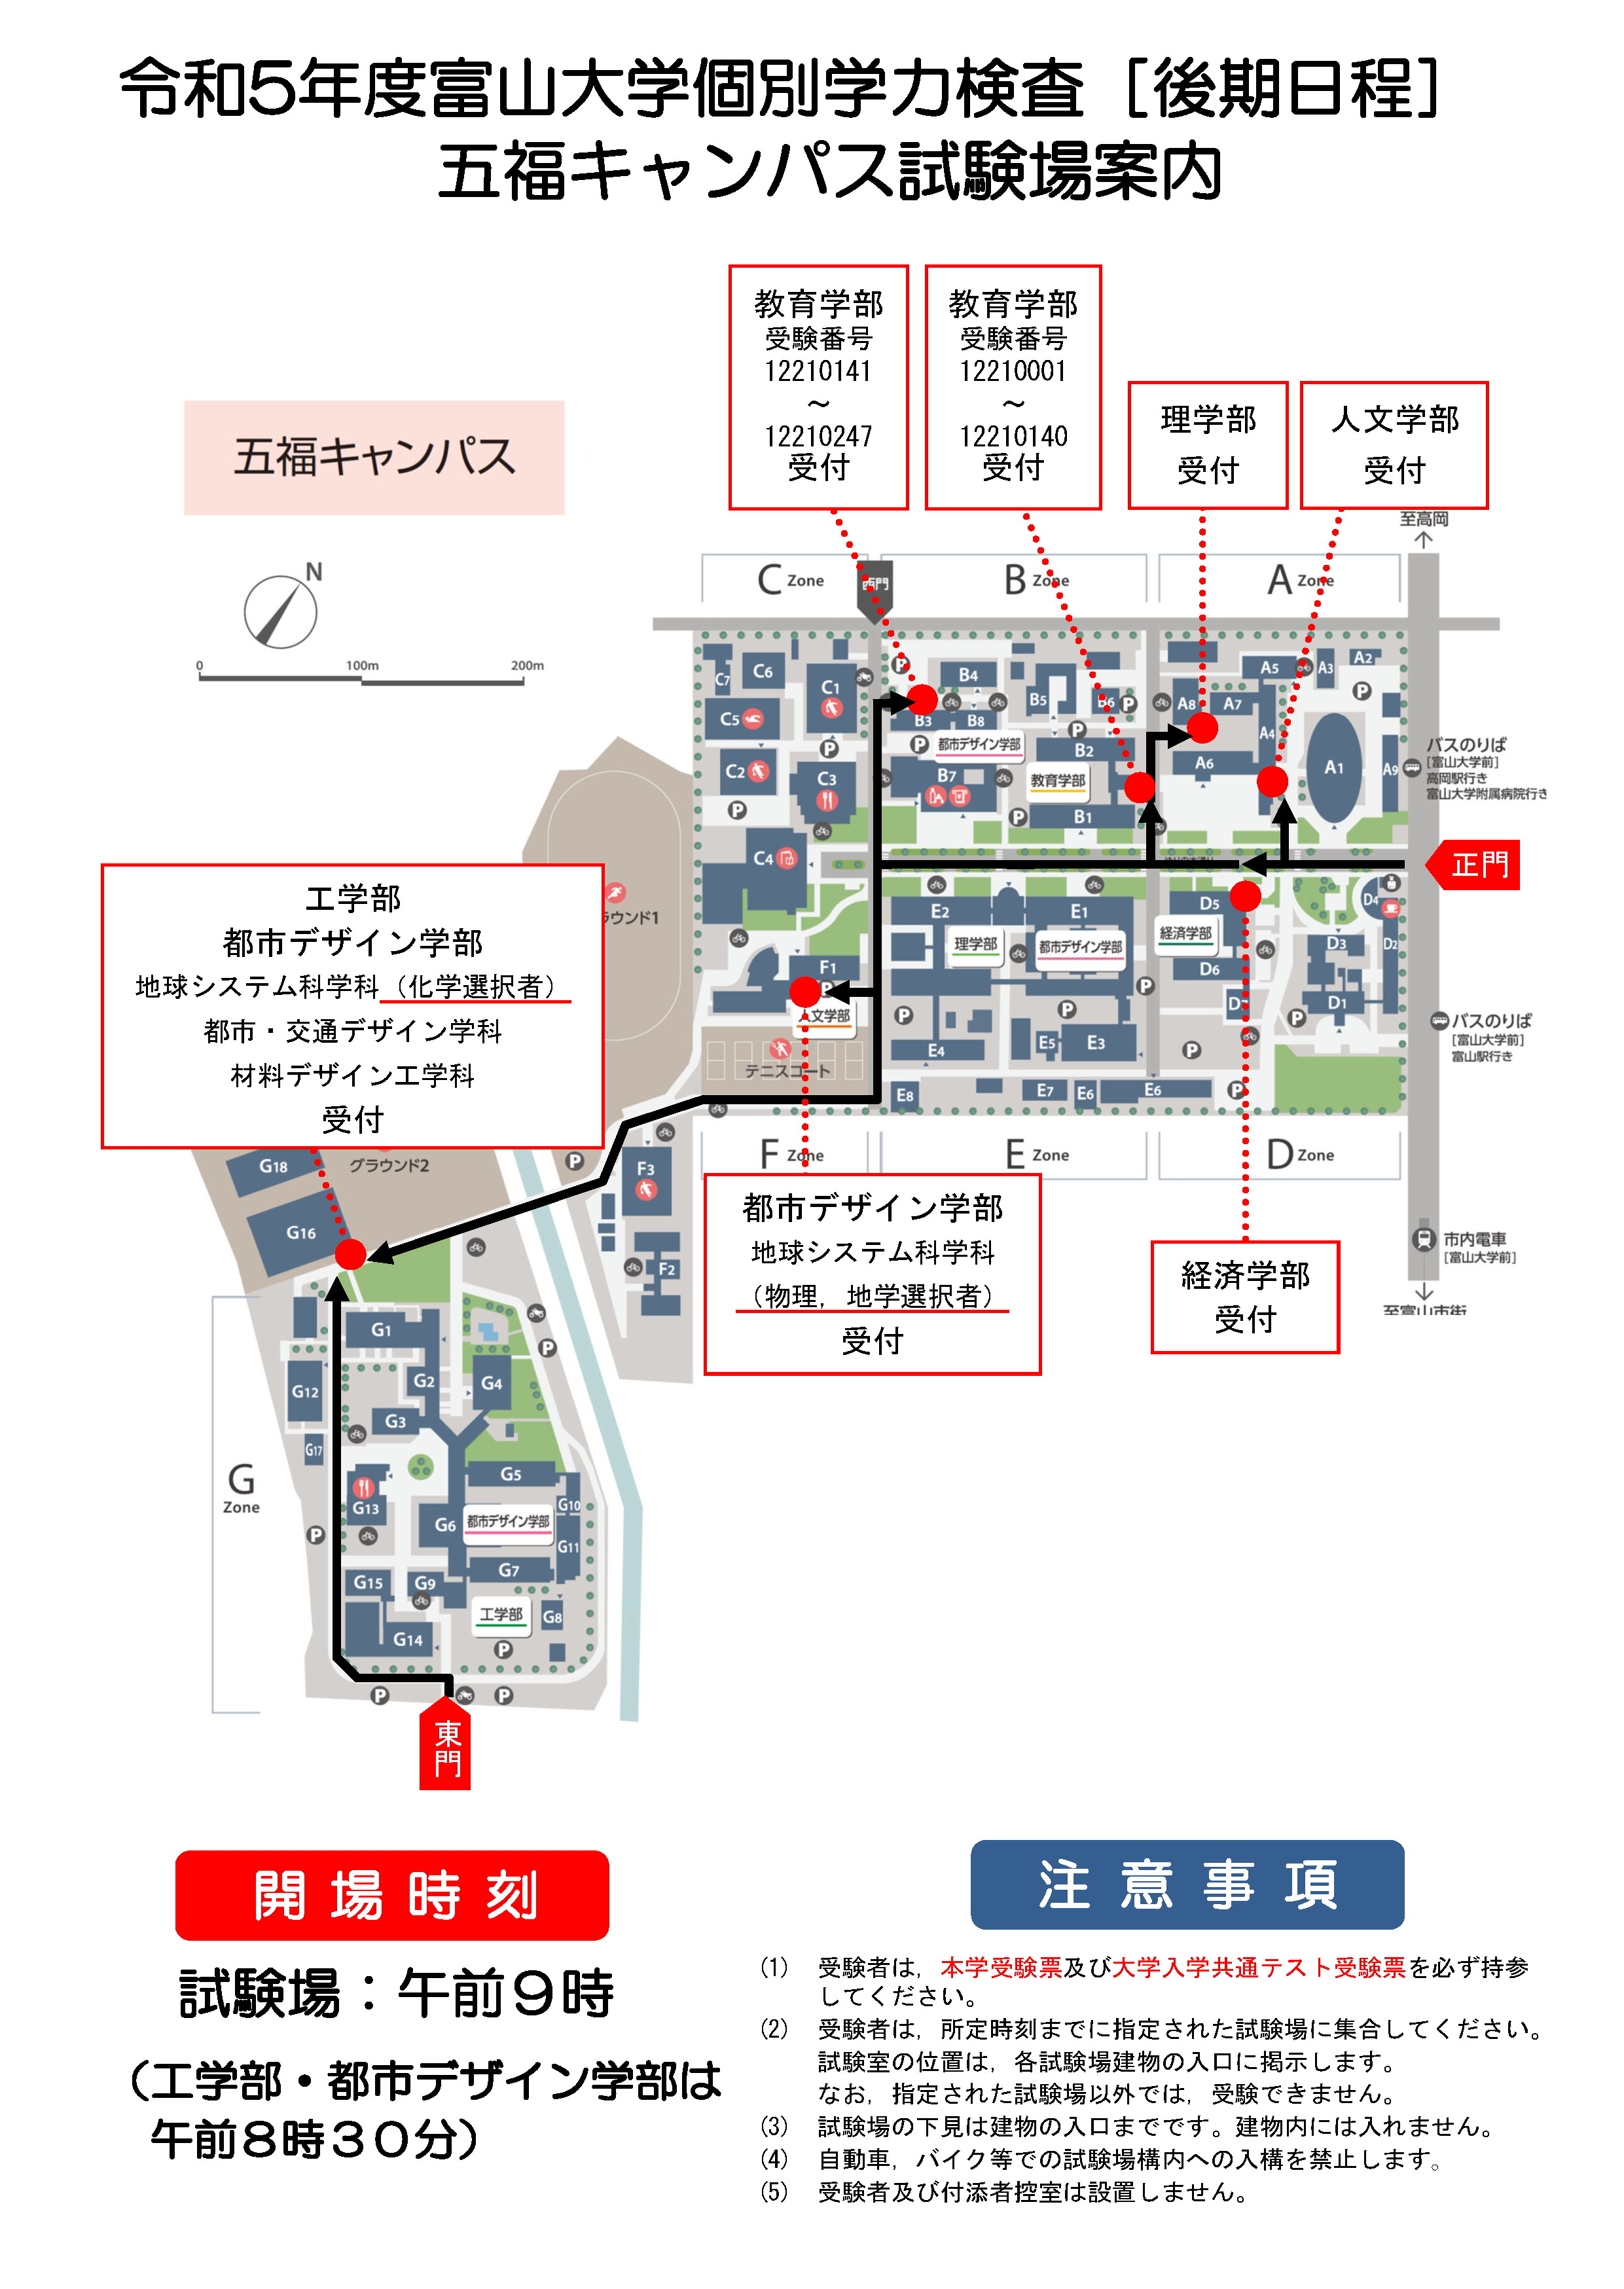 五福キャンパス試験場配置図